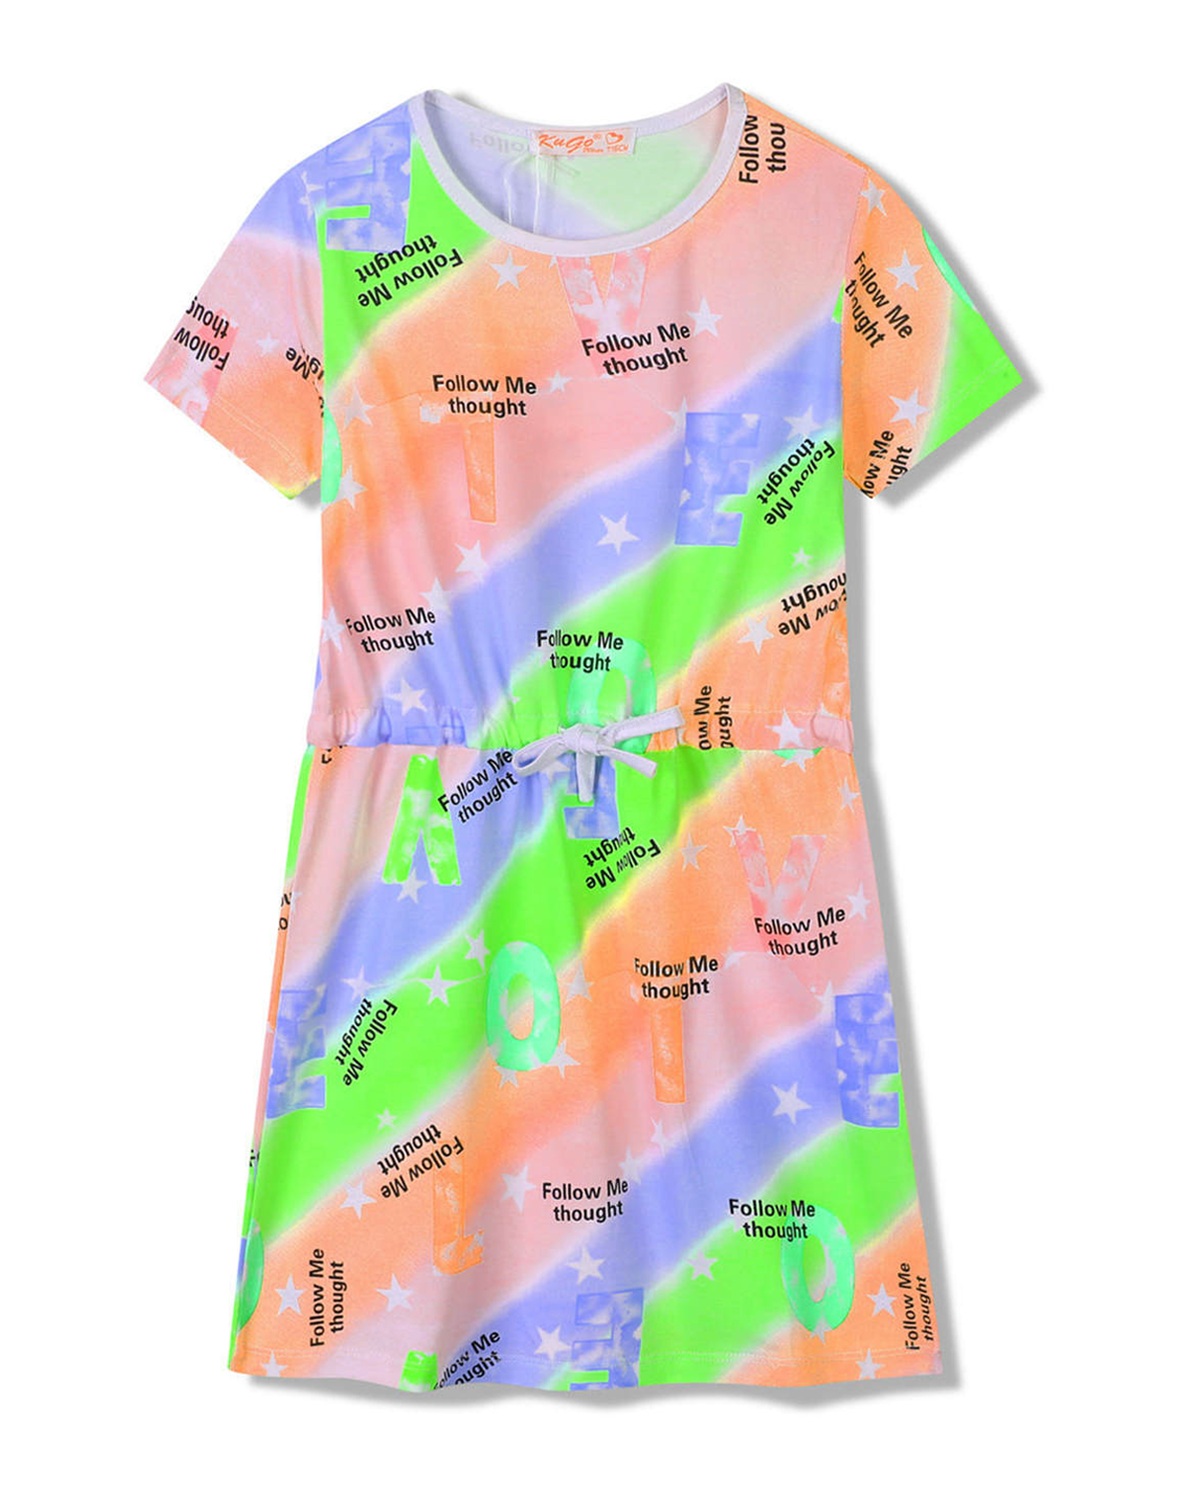 Dívčí šaty - KUGO SH3518, mix barev / bílý lem Barva: Mix barev, Velikost: 116